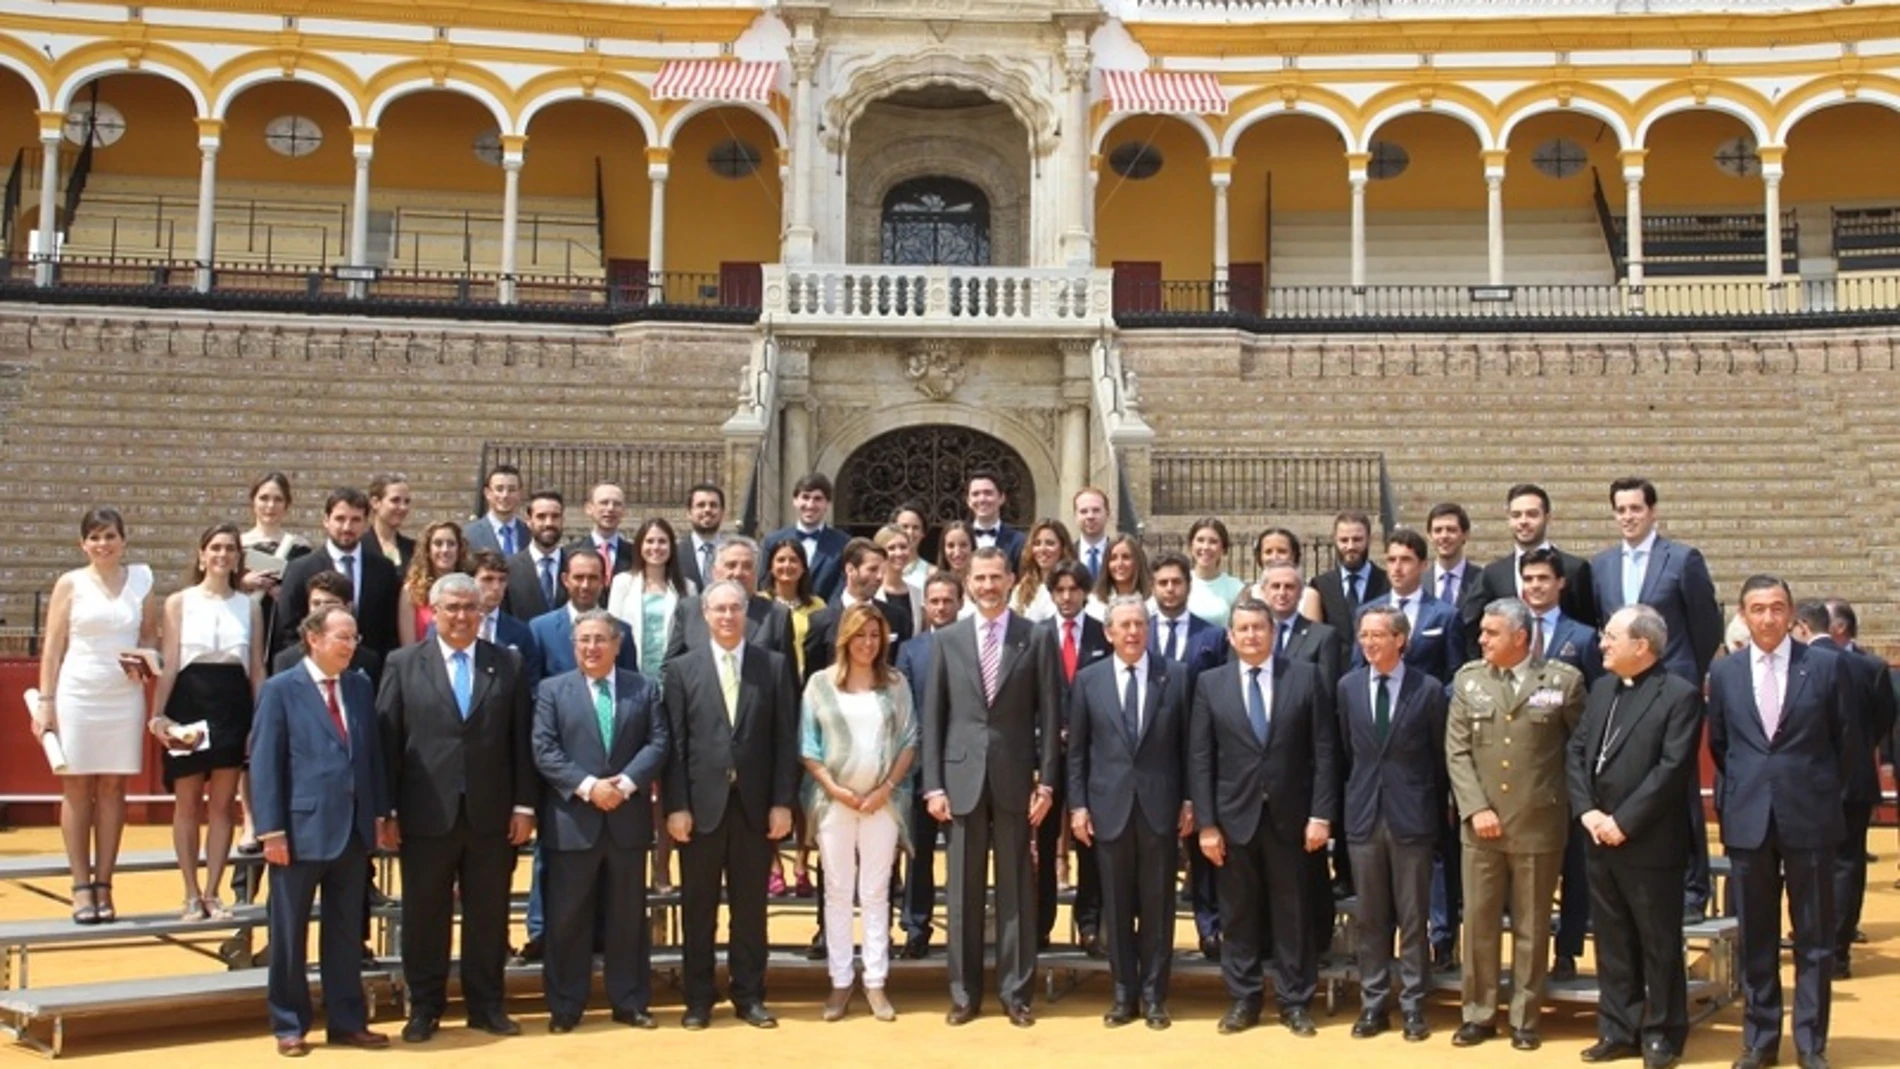 Felipe VI posando en la Real Maestranza de Sevilla junto a todos los premiados